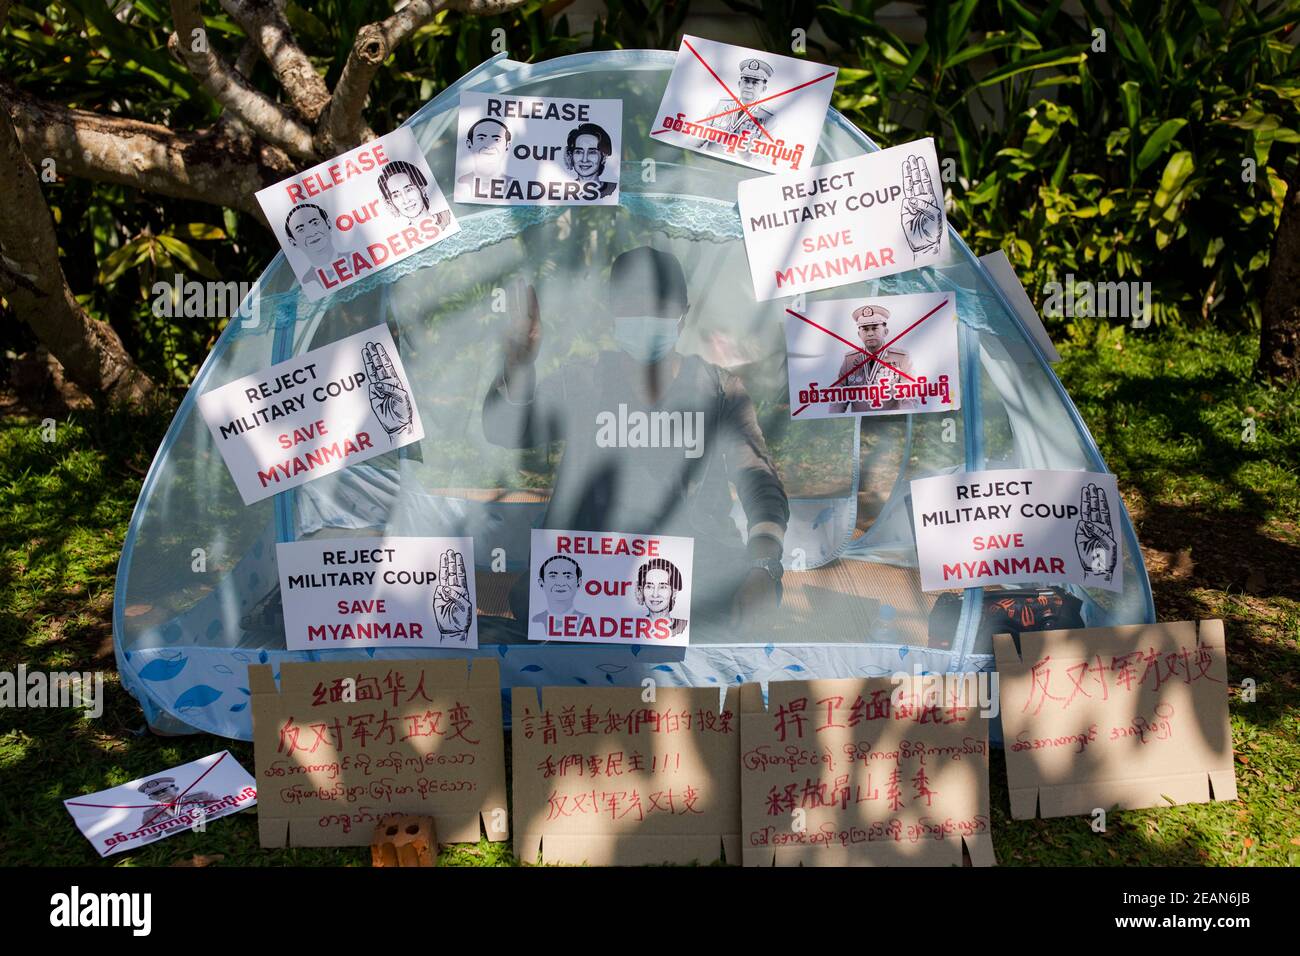 Während des Militärputsches sitzt ein Protestler in einem Zelt, das mit Protestlosungen bedeckt ist.Tausende Menschen gingen am fünften Protesttag gegen den Militärputsch auf die Straßen von Yangon und forderten die Freilassung von Aung San Suu Kyi. Das Militär von Myanmar nahm am 01. Februar 2021 die staatliche Beraterin von Myanmar Aung San Suu Kyi fest und erklärte den Ausnahmezustand, während sie die Macht im Land für ein Jahr ergattete, nachdem sie die Wahl gegen die National League for Democracy (NLD) verloren hatte. Stockfoto